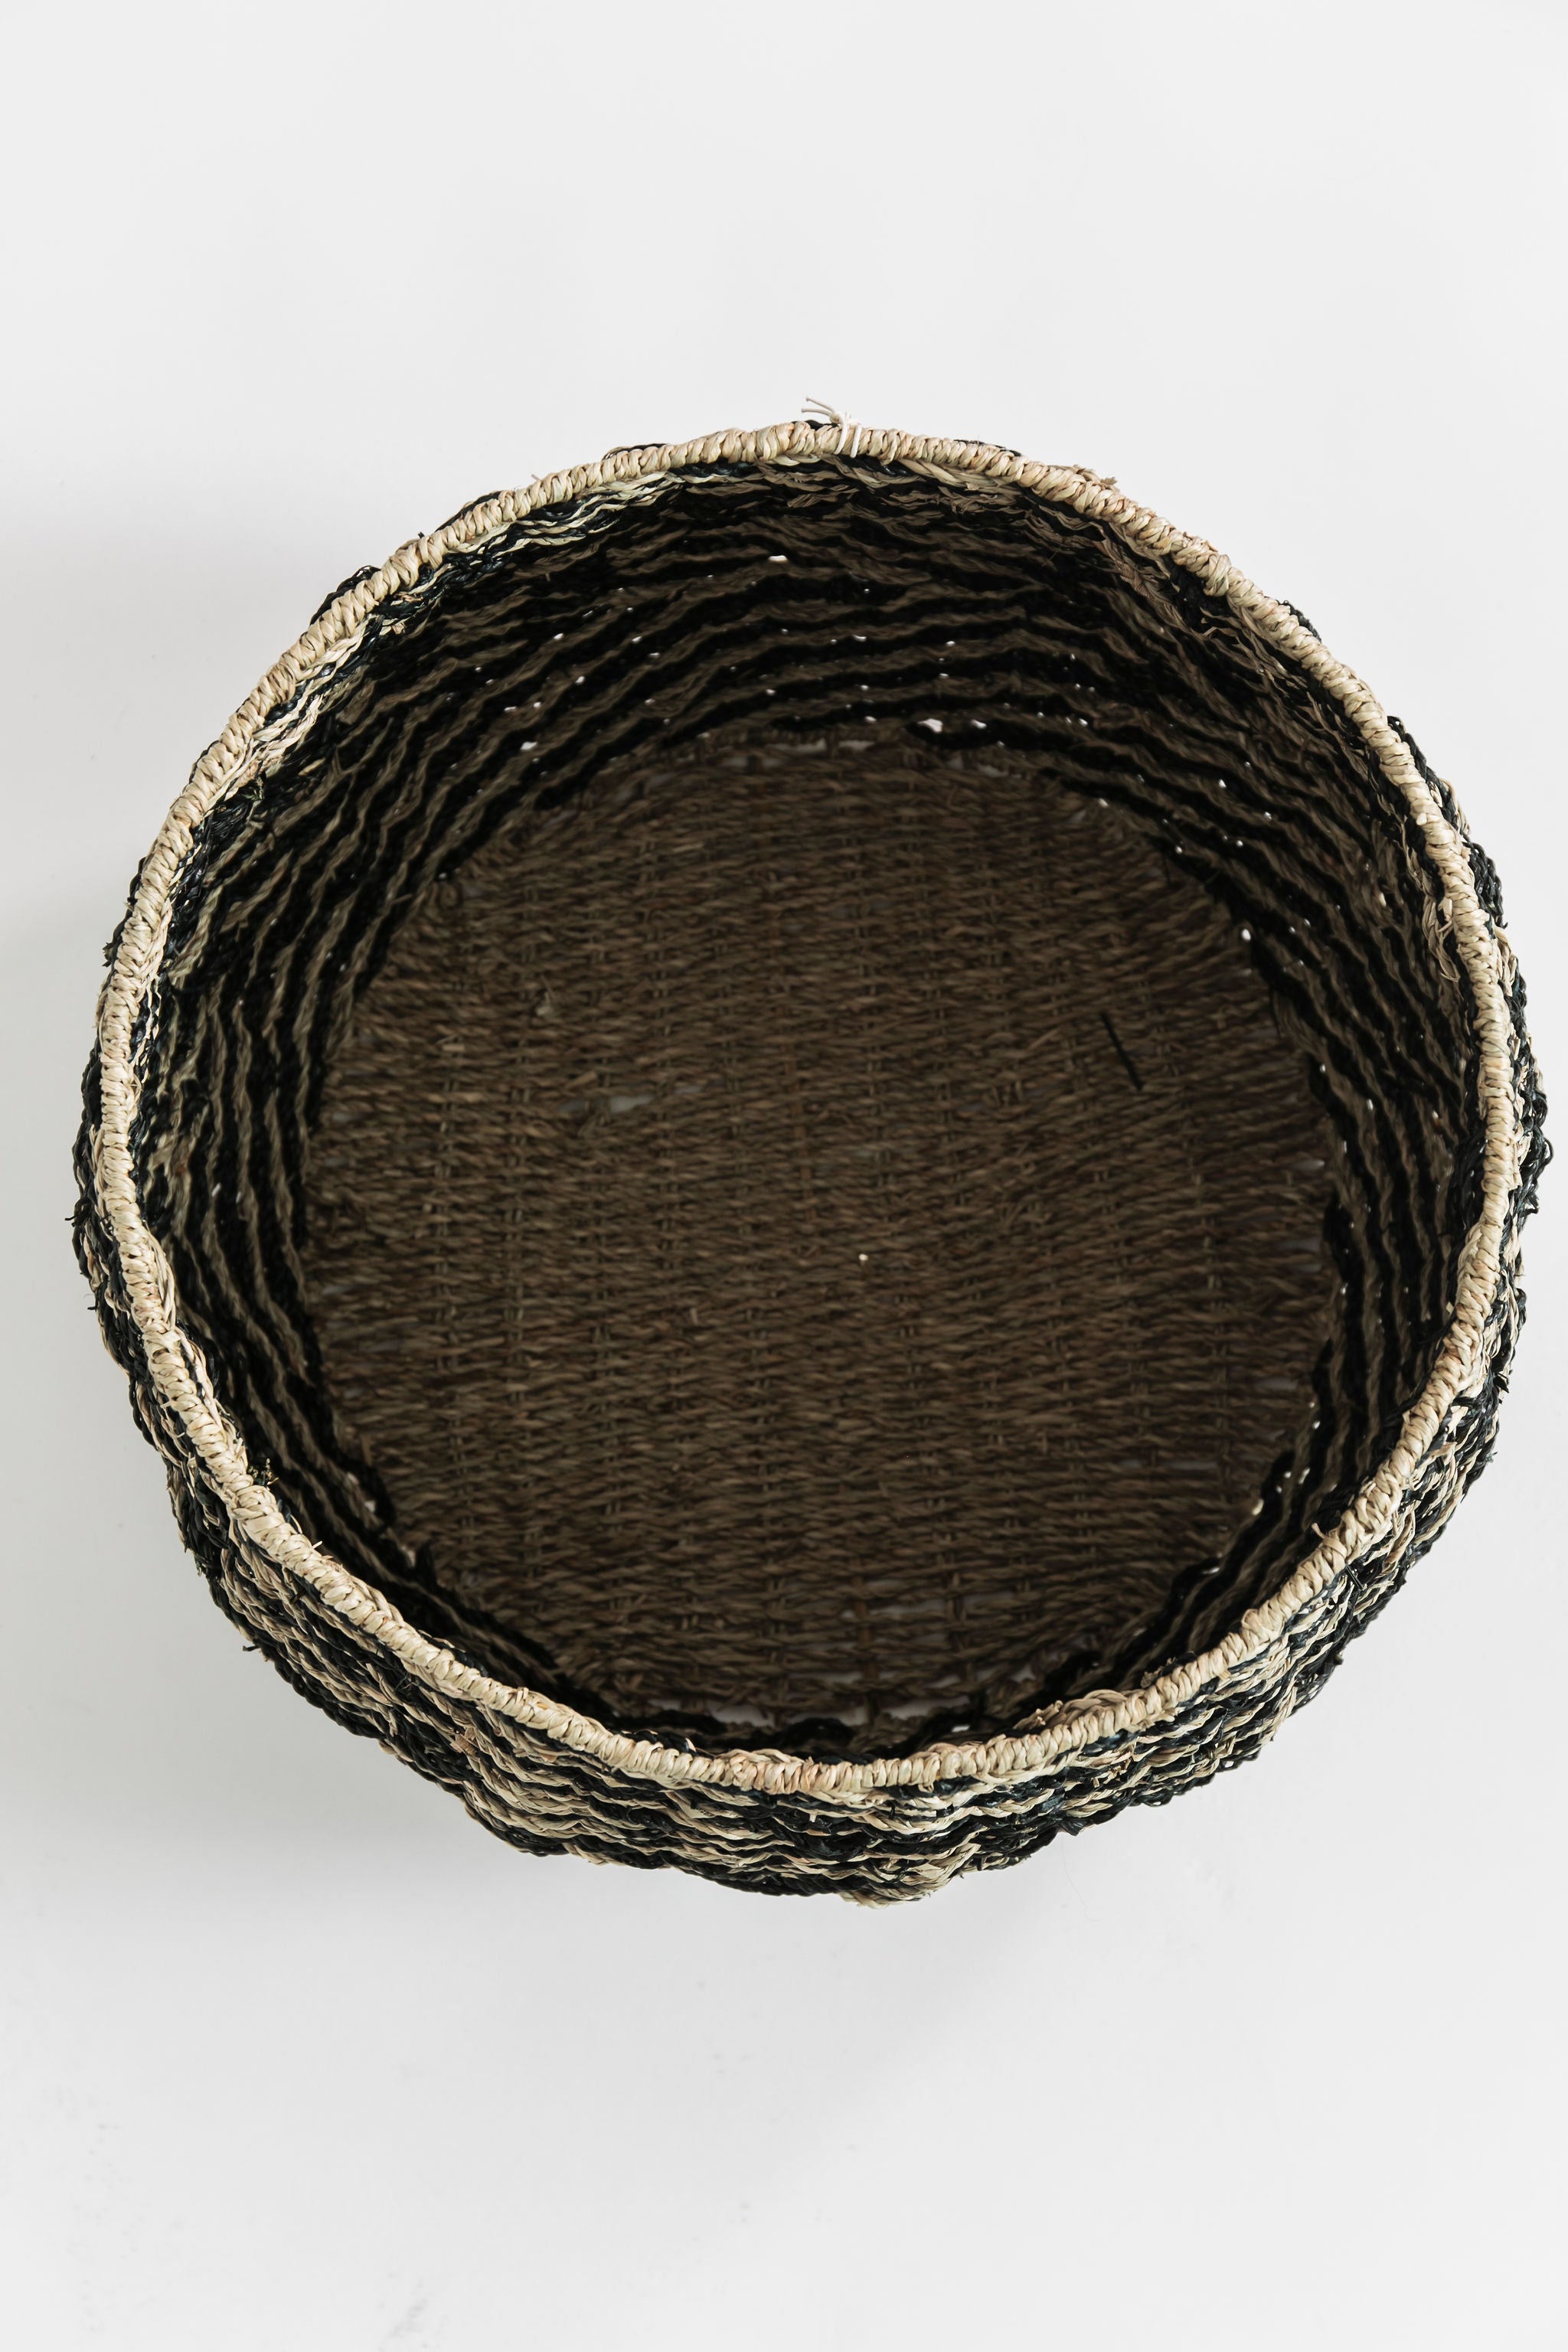 Chevron Woven Seagrass Basket- Medium